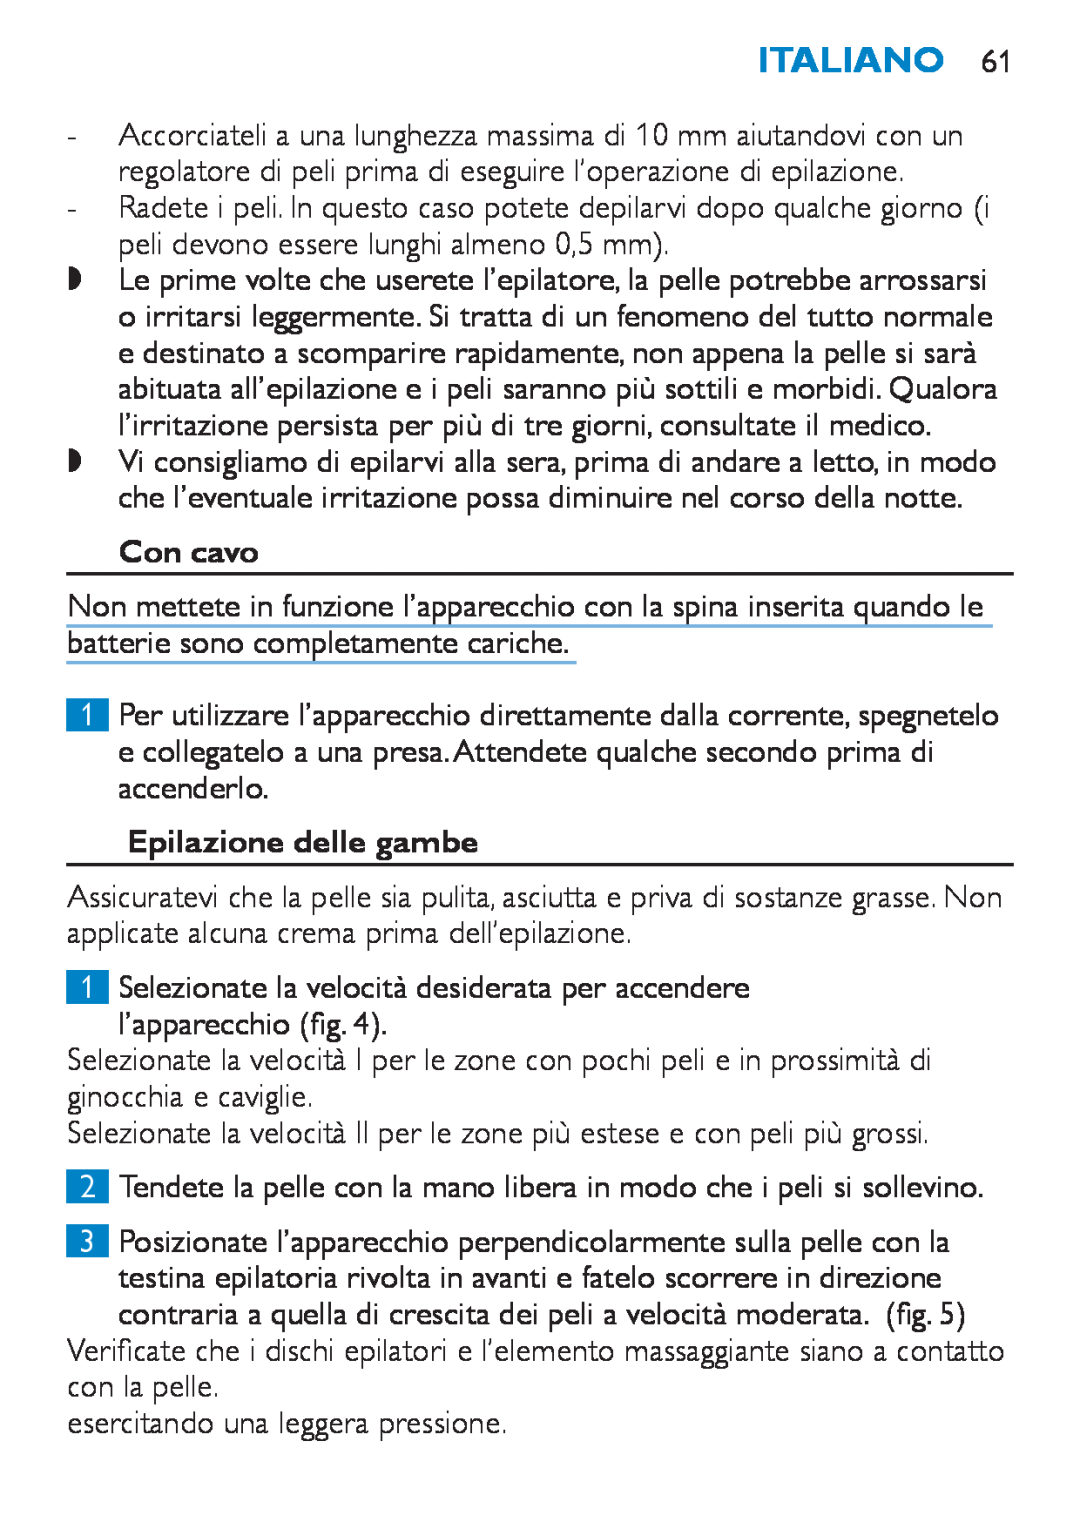 Philips HP6490 manual Con cavo, Epilazione delle gambe, Italiano 